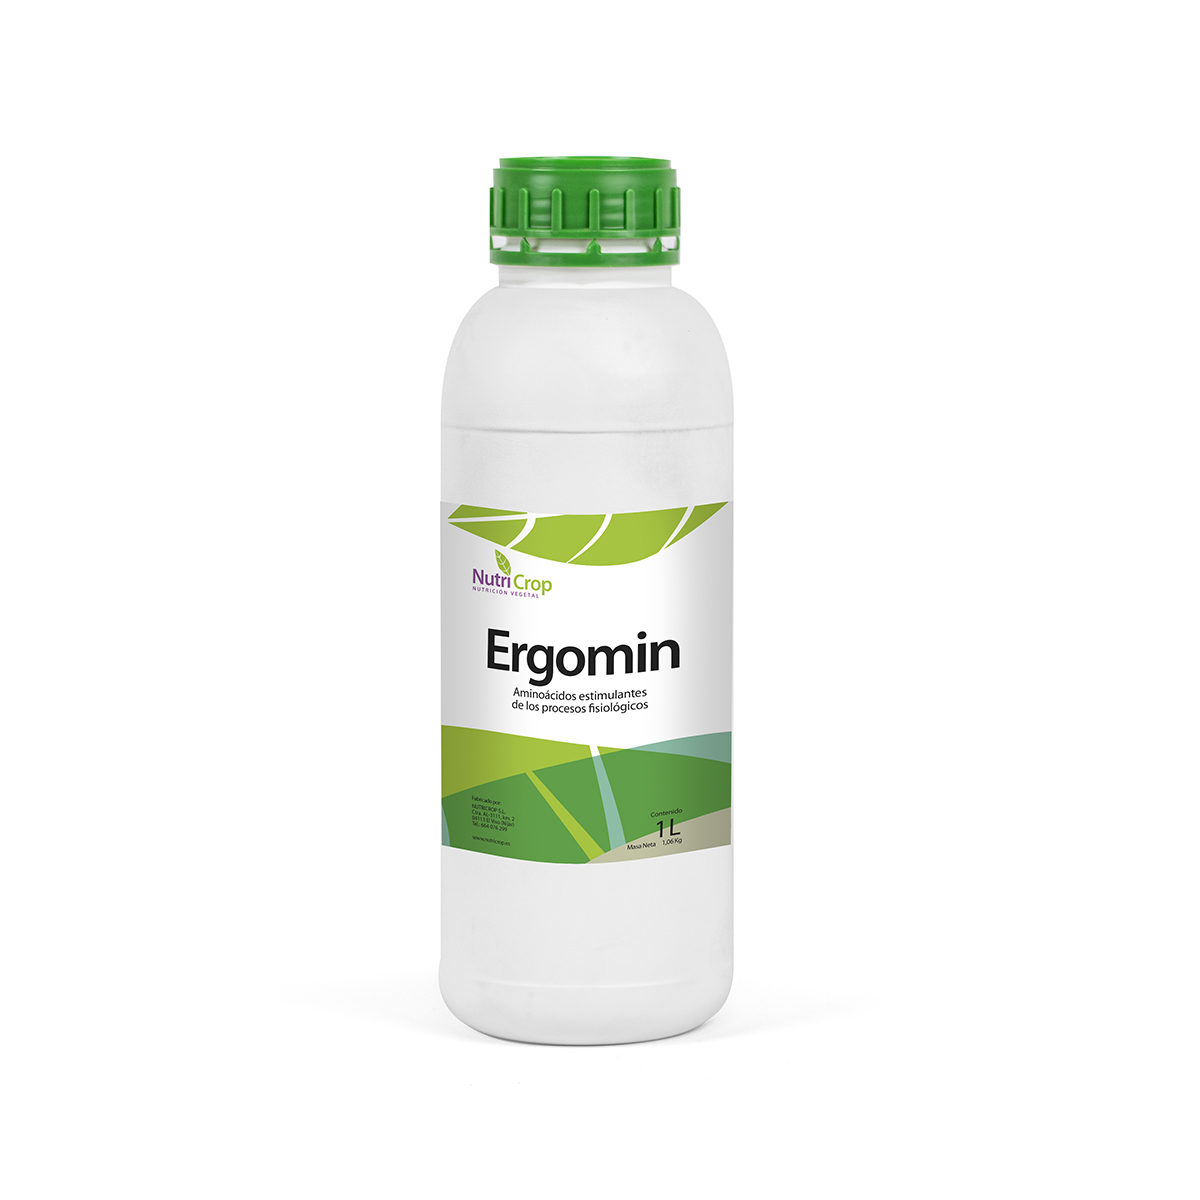 Ergomin - Nutricrop